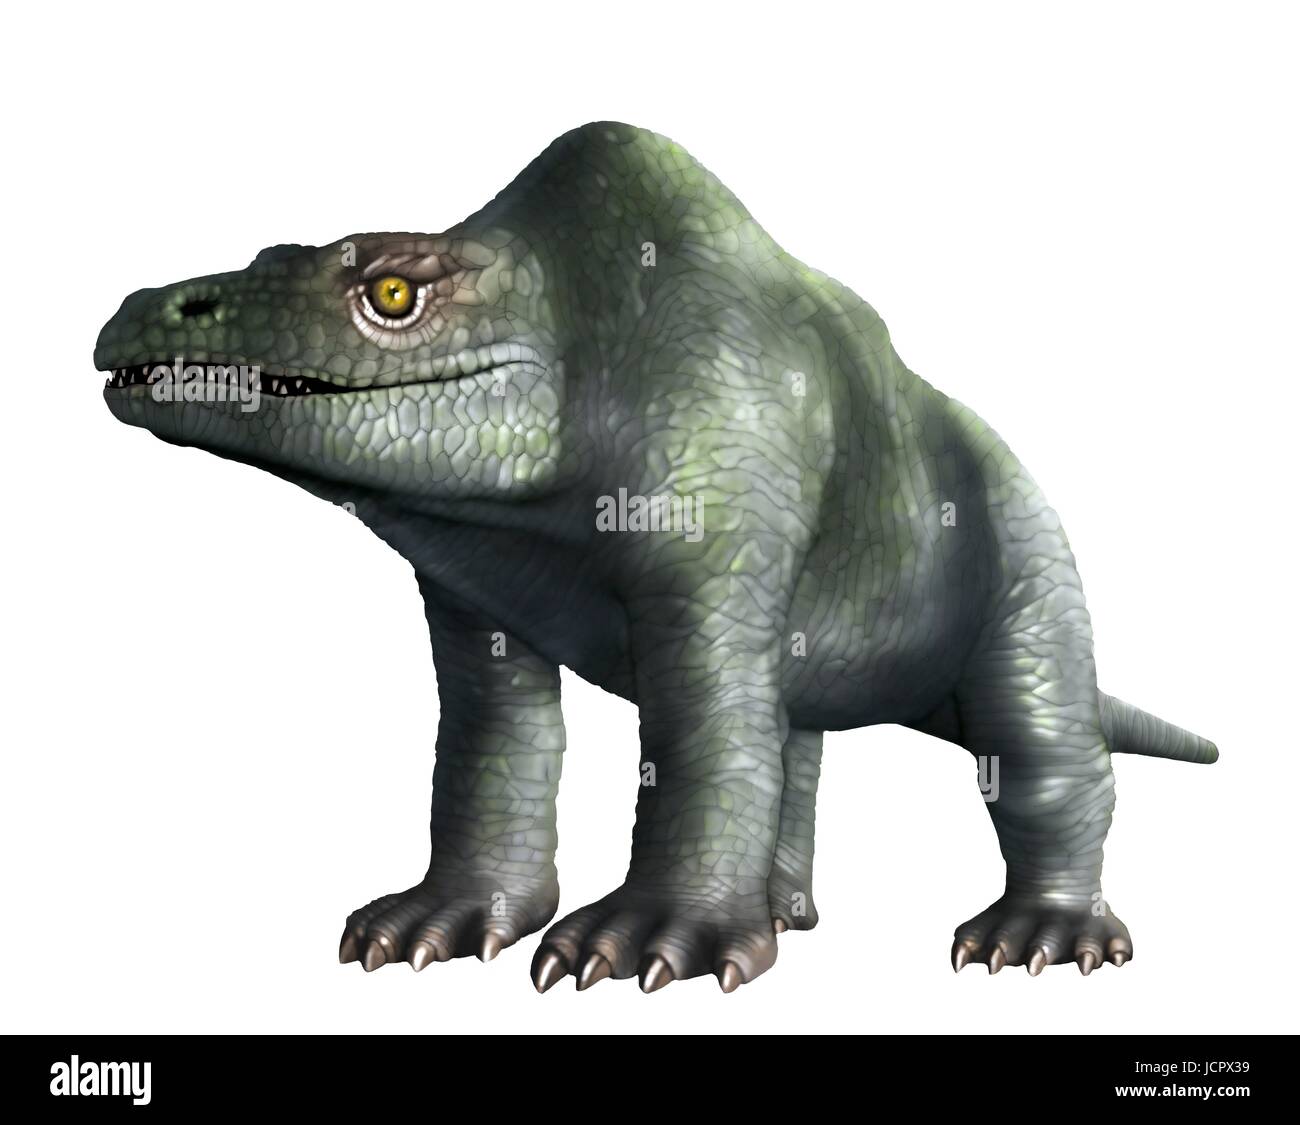 Es Megalosaurus género extintos dinosaurios que comen carne,los terópodos,desde mediados del período Jurásico en la historia de la tierra,166 millones de años.vivió en lo que ahora es el sur de Inglaterra.El primer fósil de dinosaurio jamás encontrado,hace ya mucho tiempo, en 1676,fue probablemente fragmento de hueso del muslo que pertenecieron a Megalosaurus.Este animal fue mediana terópodos,6 a 7 metros de largo que pesa aproximadamente una tonelada.Esta ilustración muestra animal como se había pensado originalmente para aparecer,atrás en el siglo XIX.La imagen se basa estatuas famosas animal en Londres el Crystal Palace Park. Foto de stock